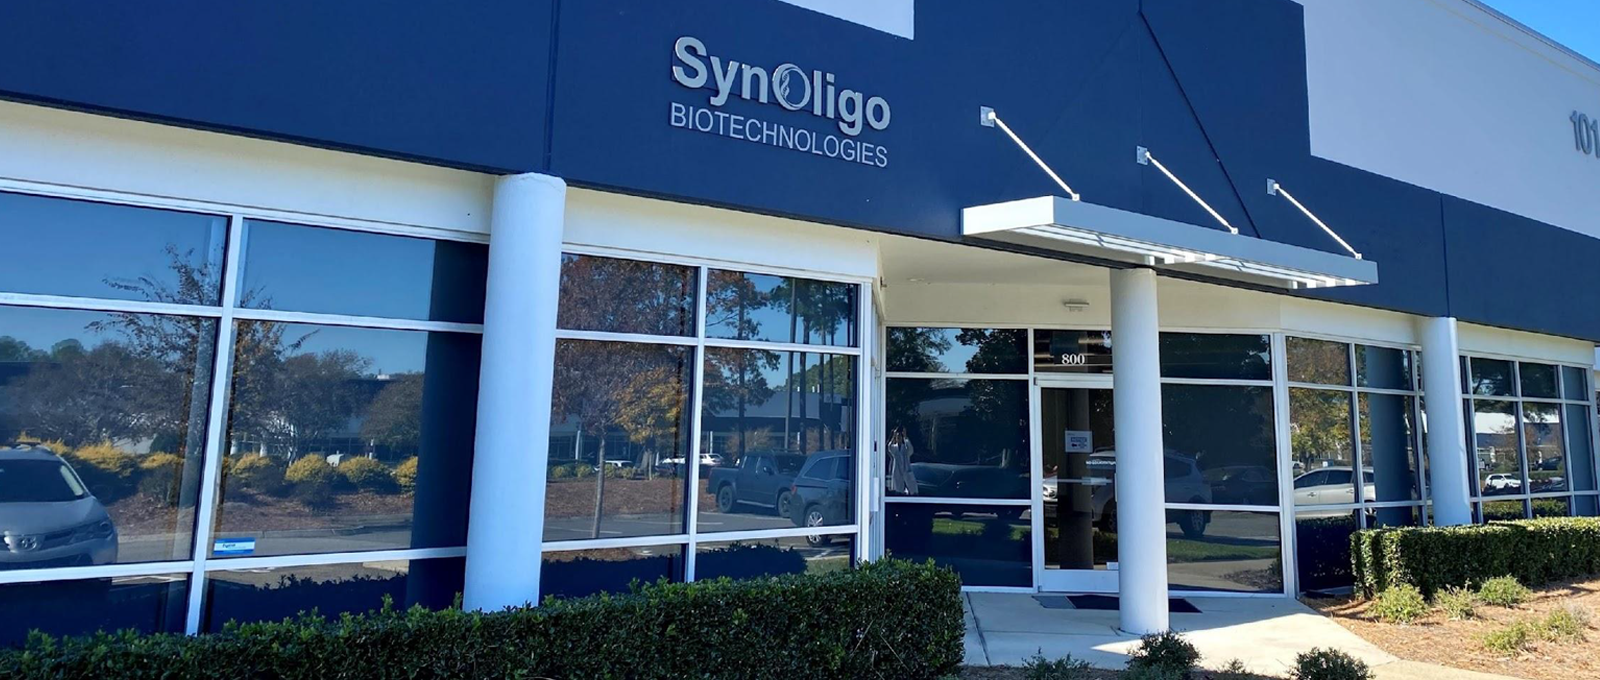 Synoligo about us